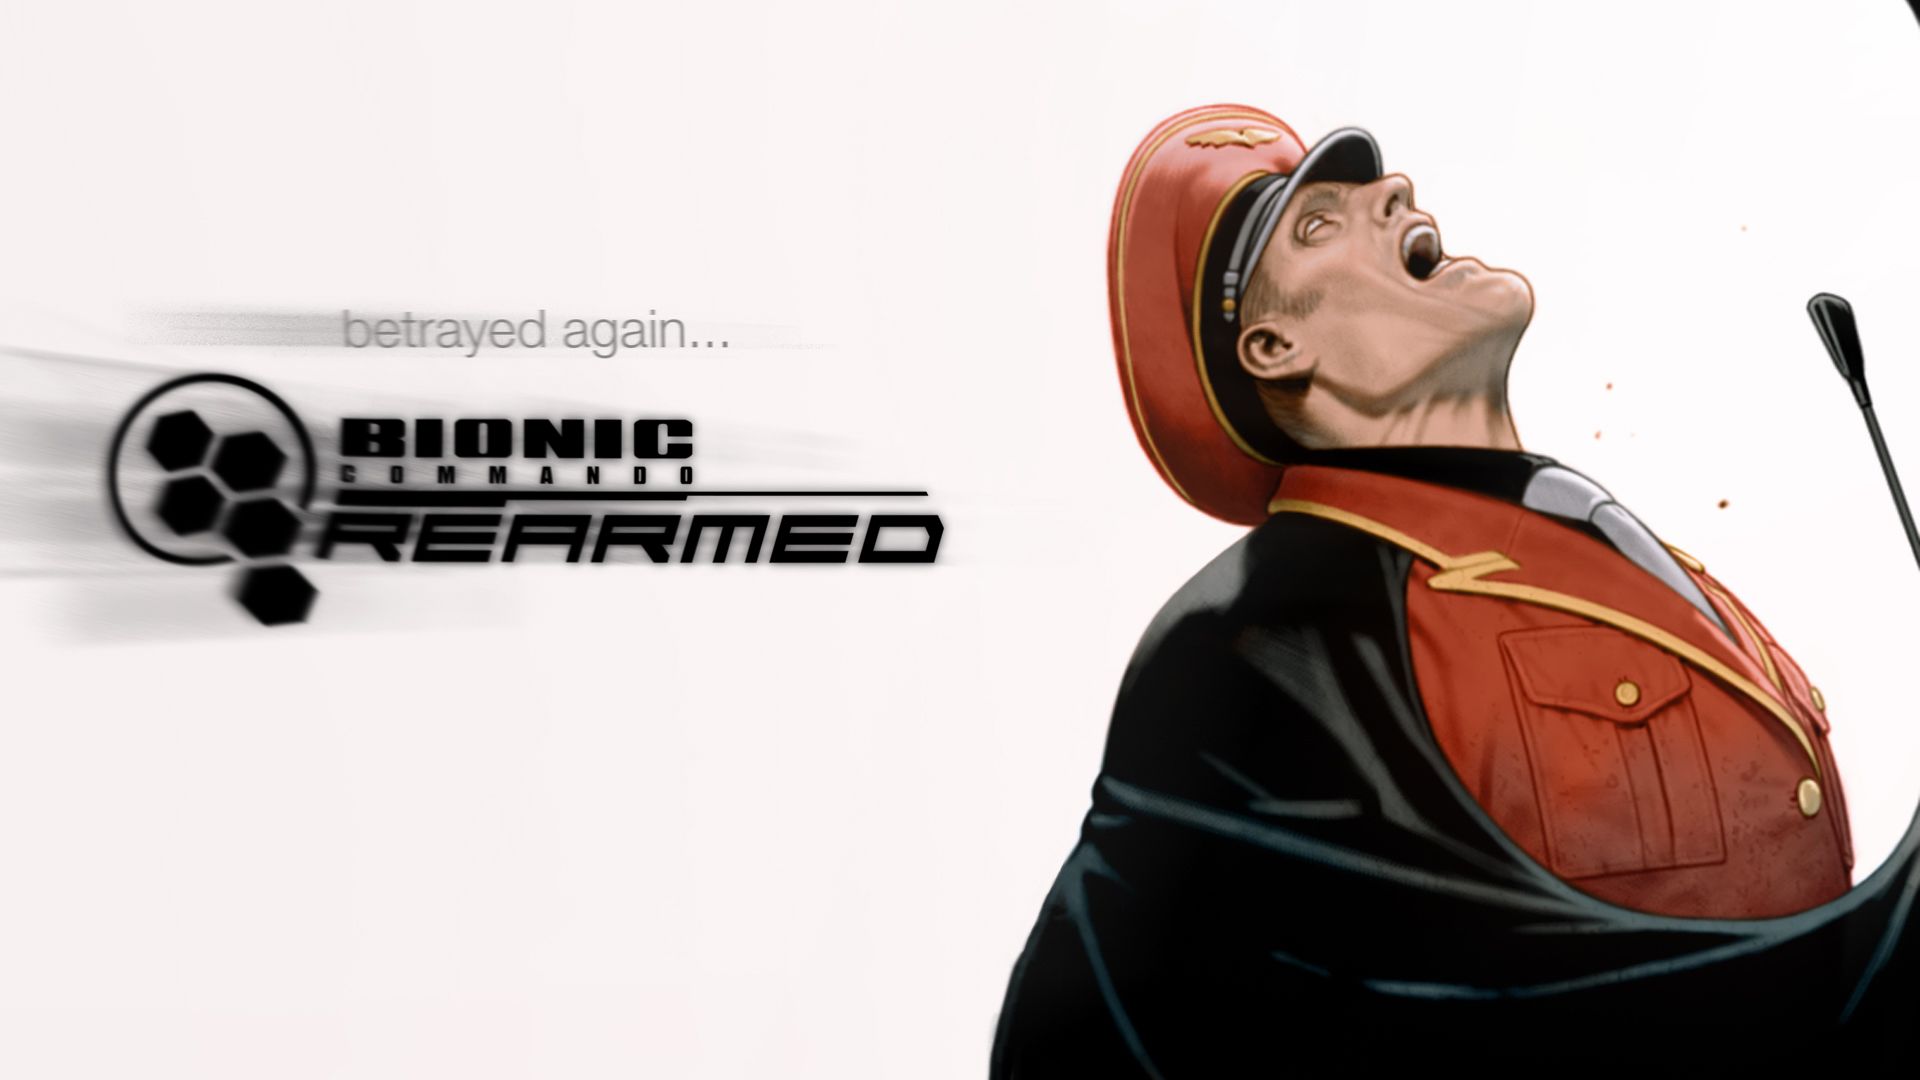 Bionic Commando: Rearmed HD Wallpaper